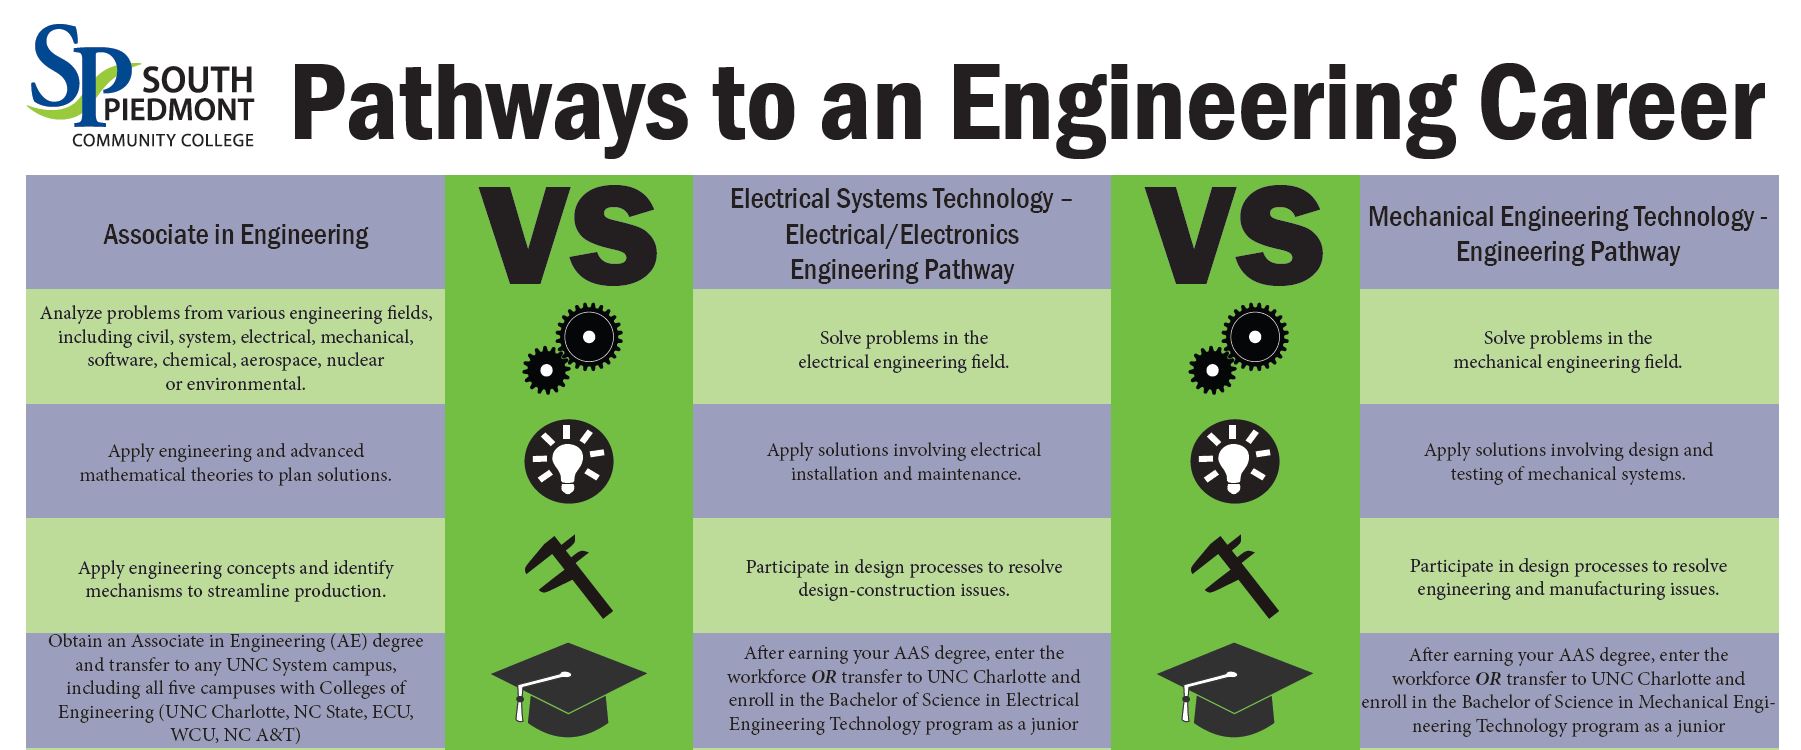 Las diferencias entre ingeniería química y mecánica